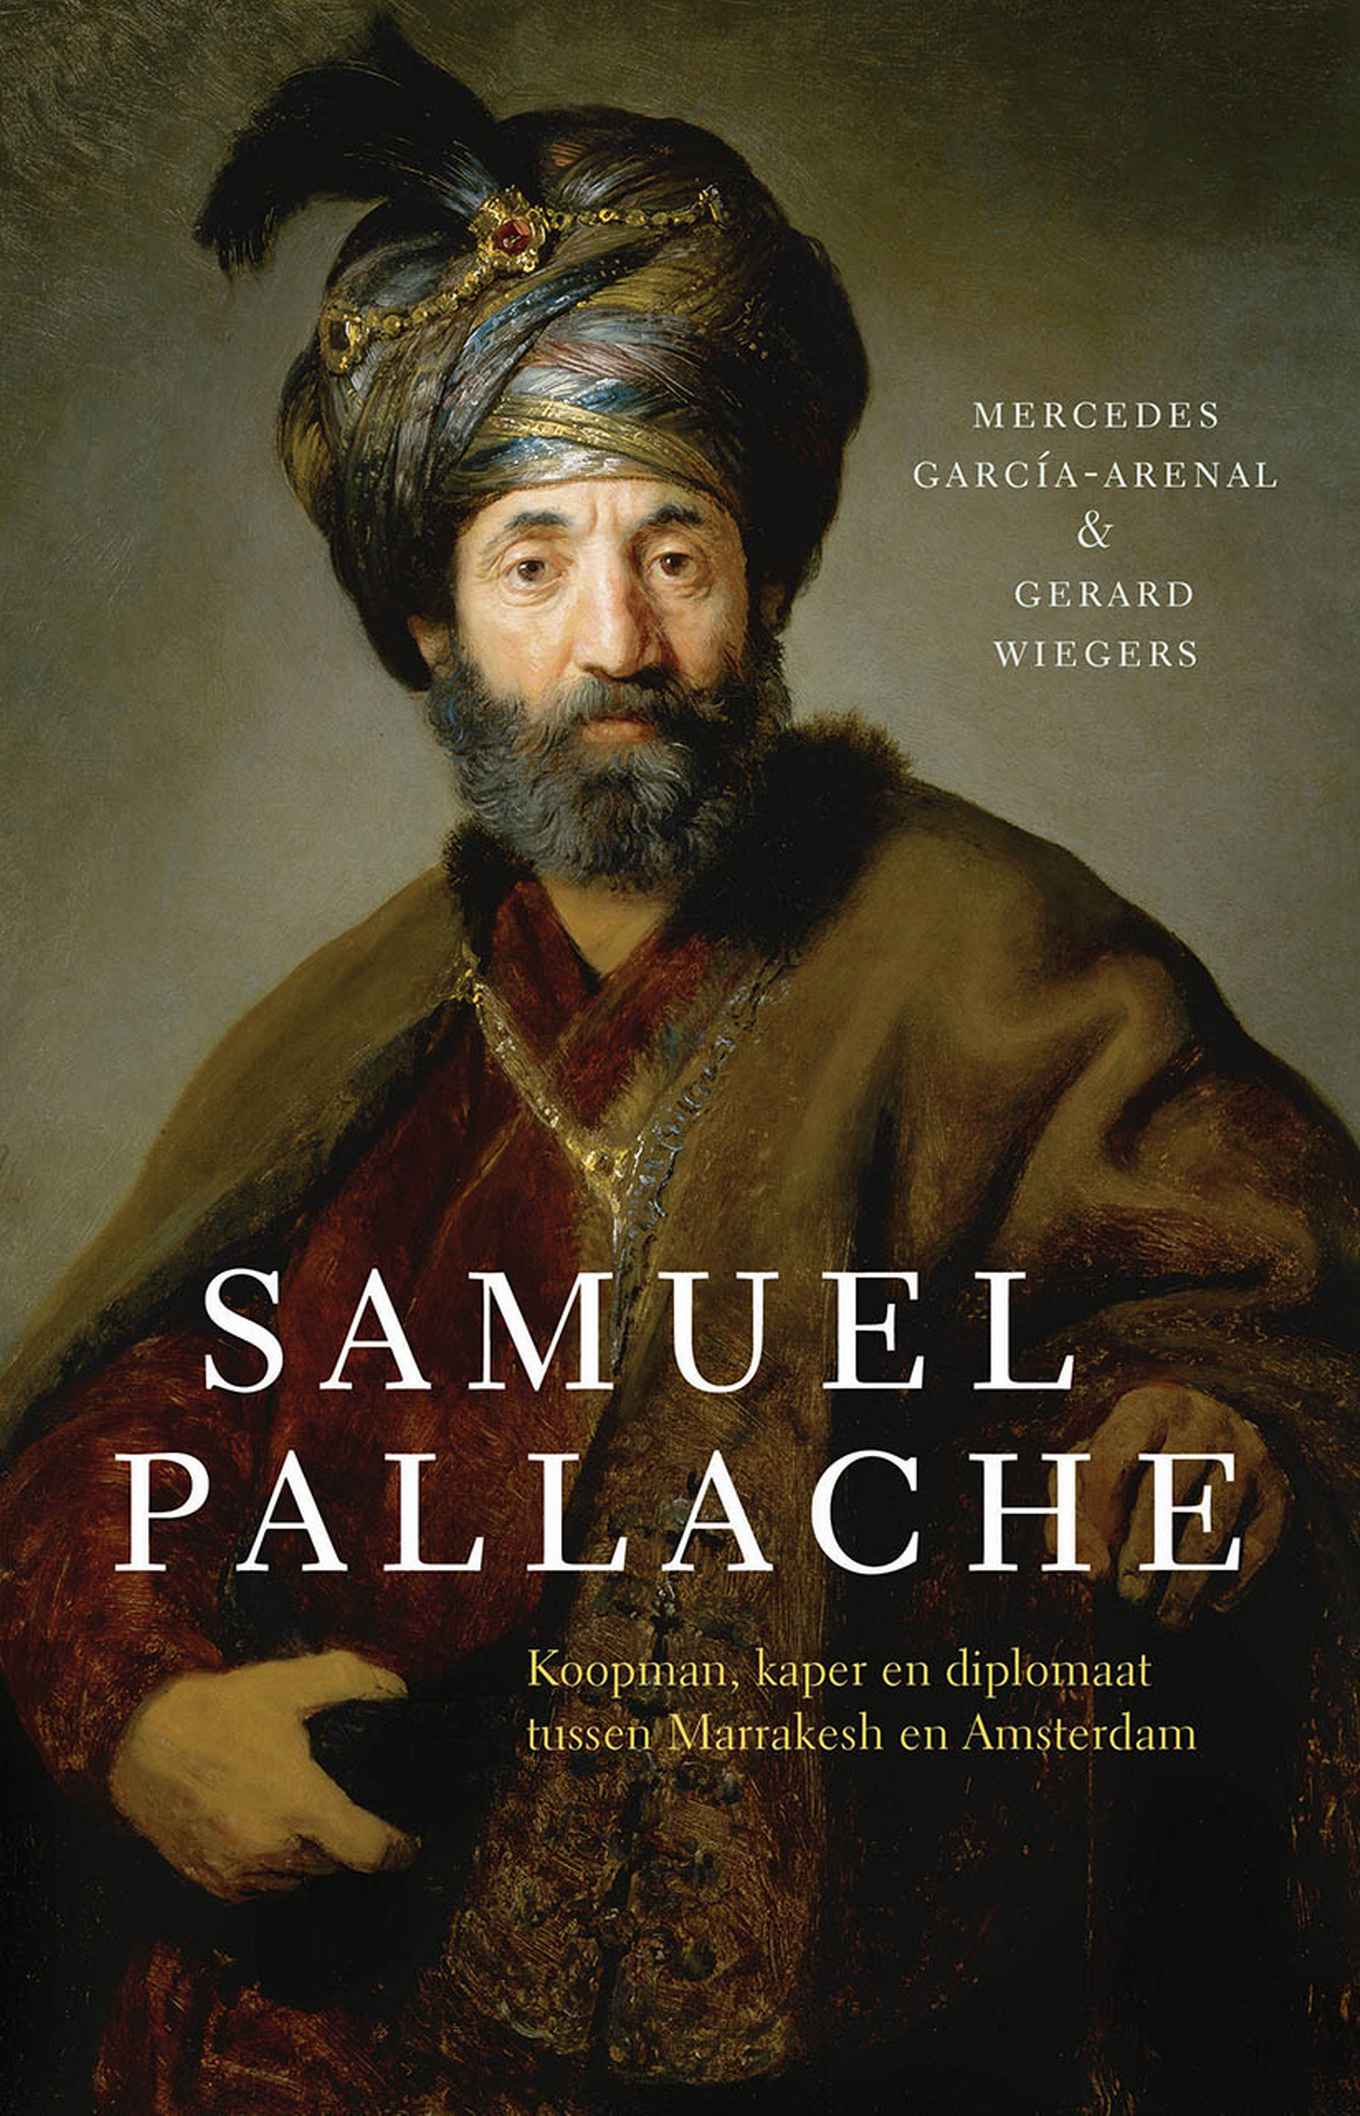 Samuel Pallache: Koopman, kaper en diplomaat tussen Marrakesh en Amsterdam